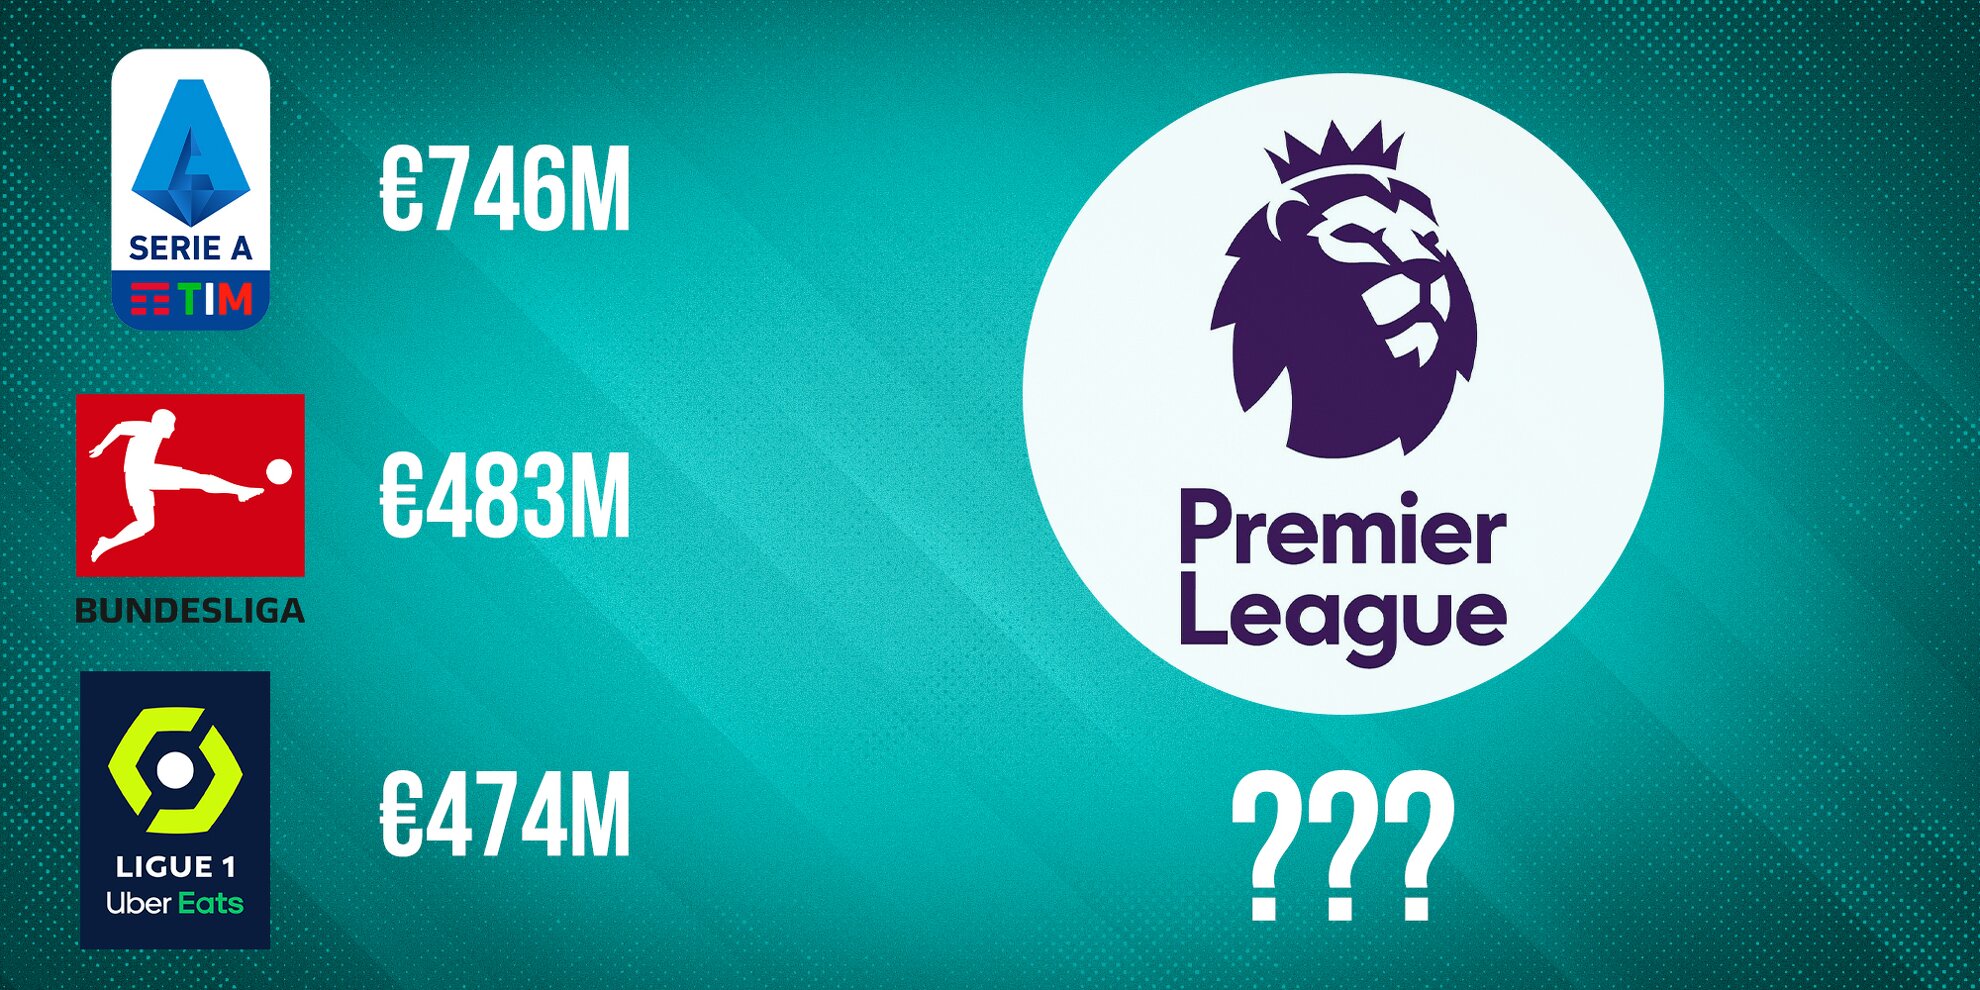 Premier League breaks all spending records in summer transfer window 2022